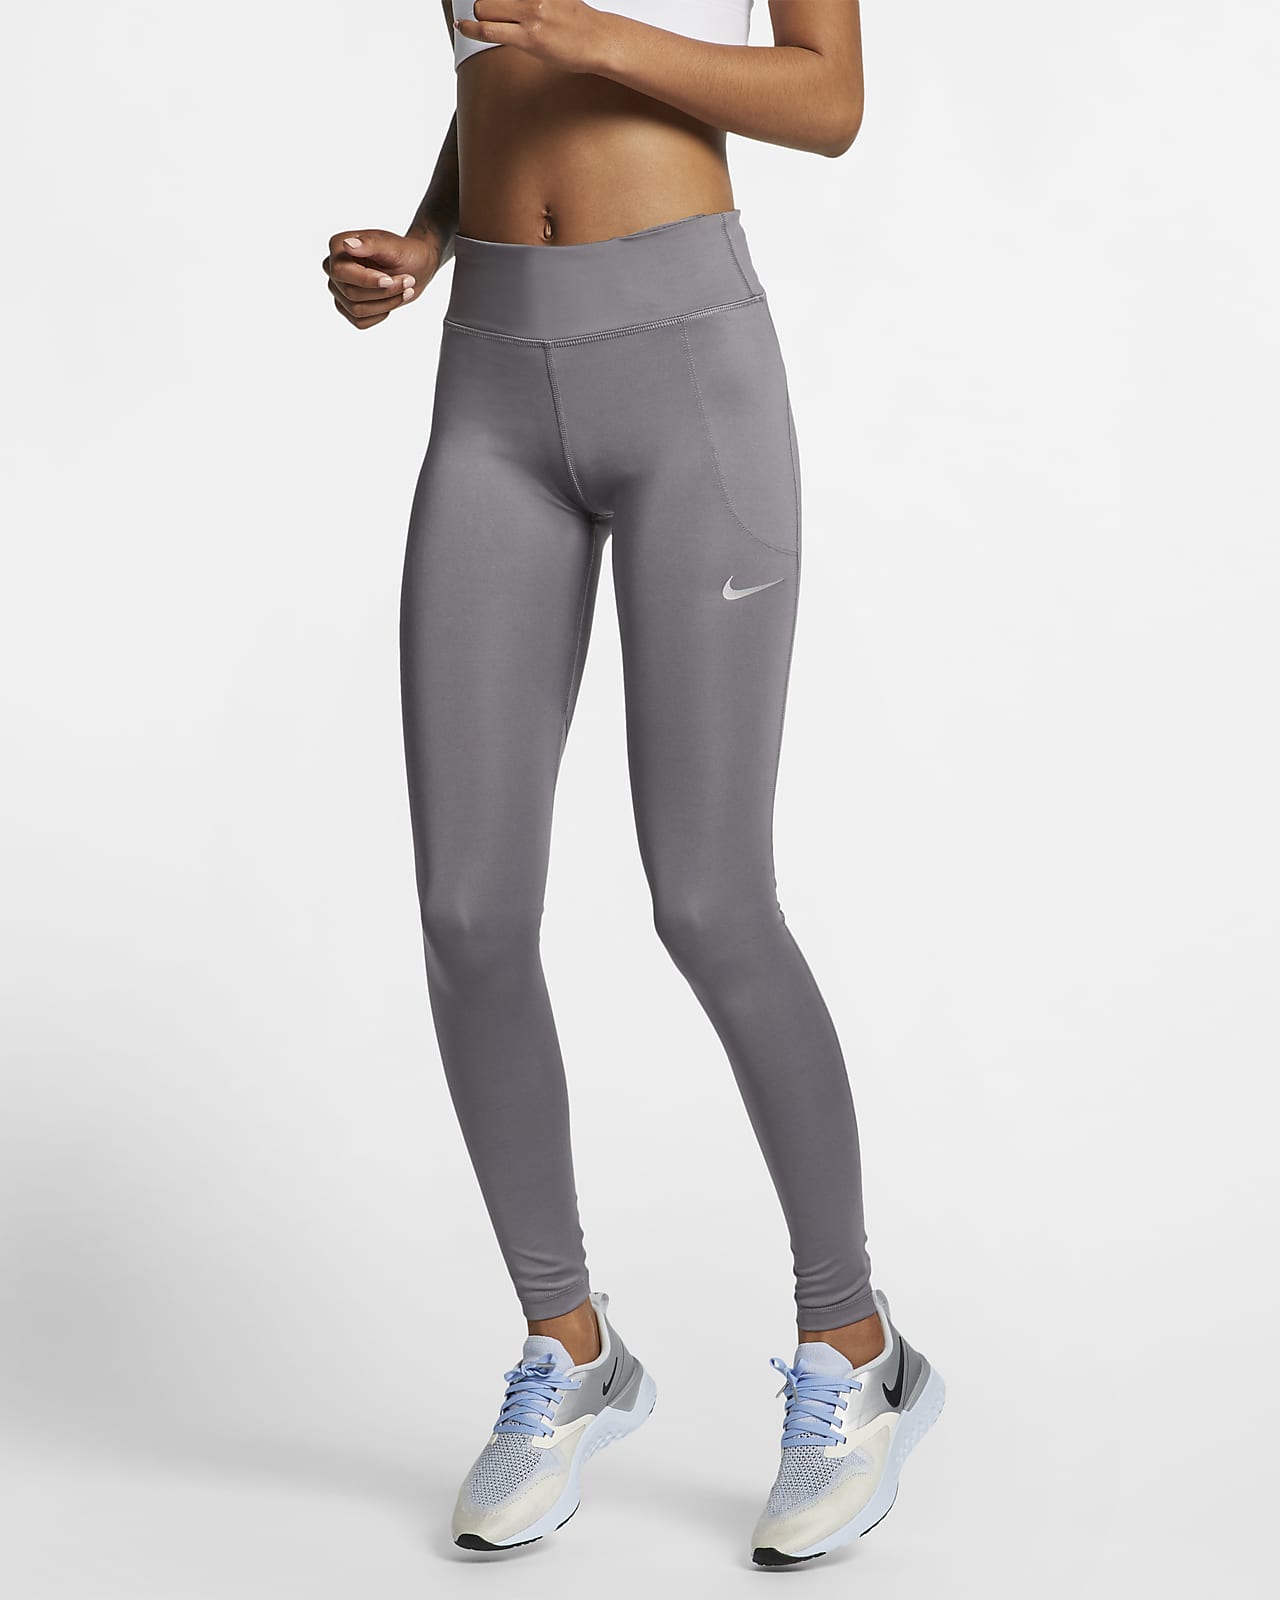 Nike Fast Women's Mid-Rise Running Leggings.